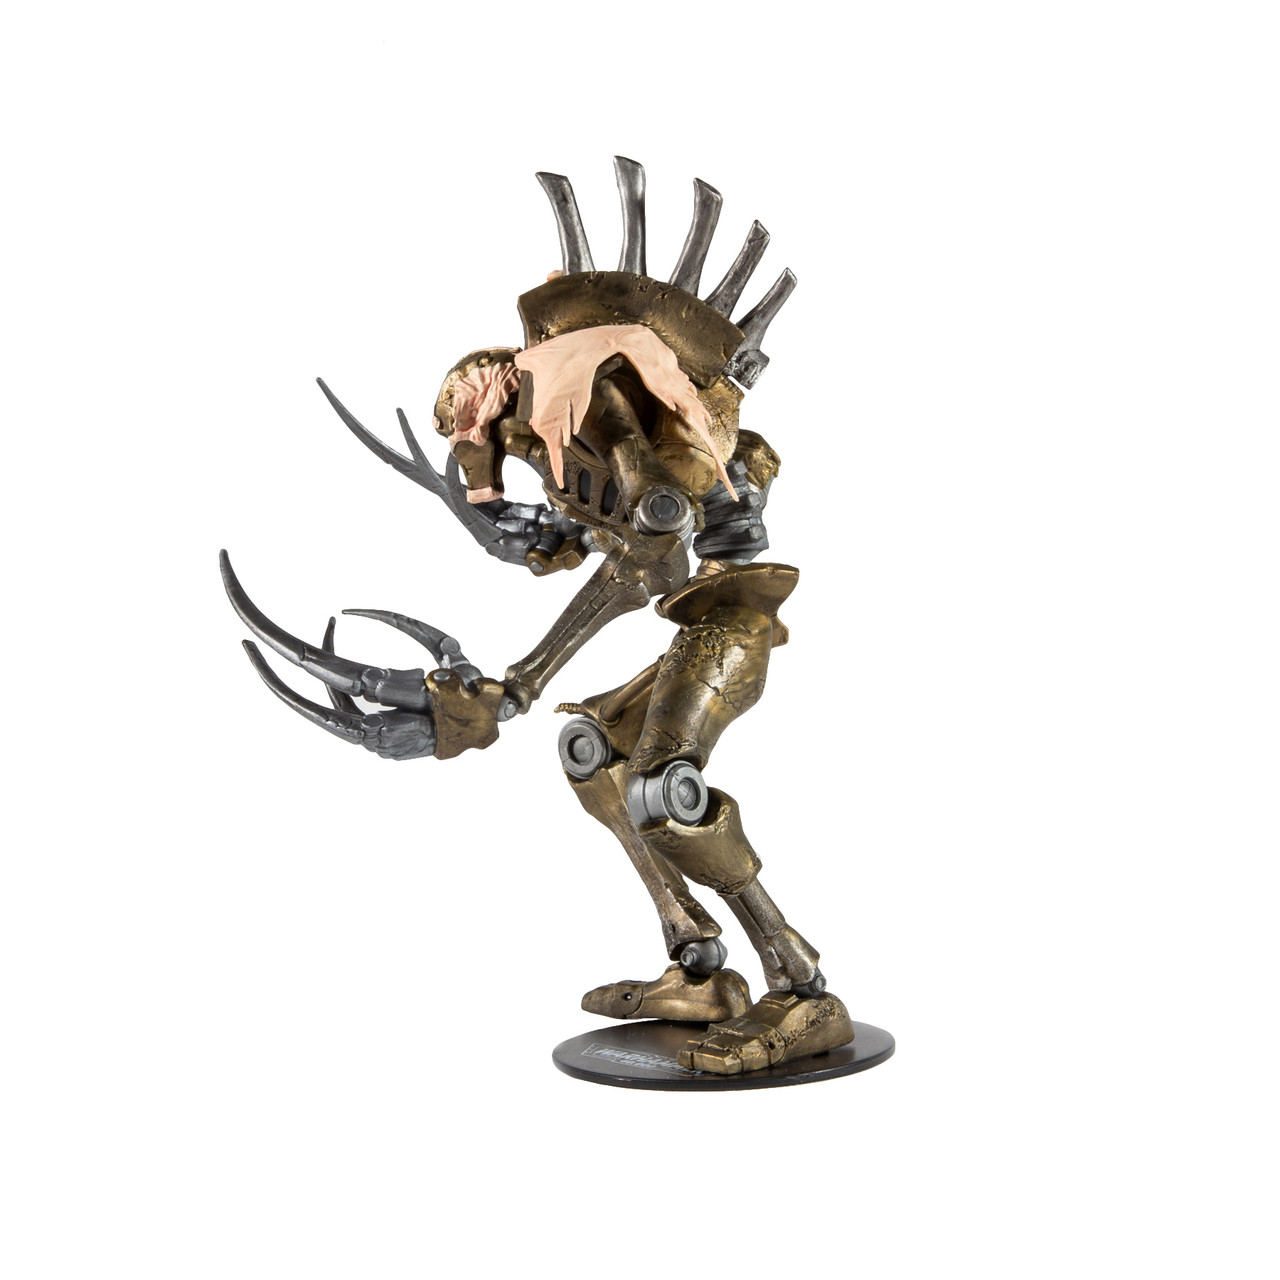 Acheter Warhammer 40k: Figurine Necron Flayed One 18 cm - McFarlane Toys -  Jeux de figurines